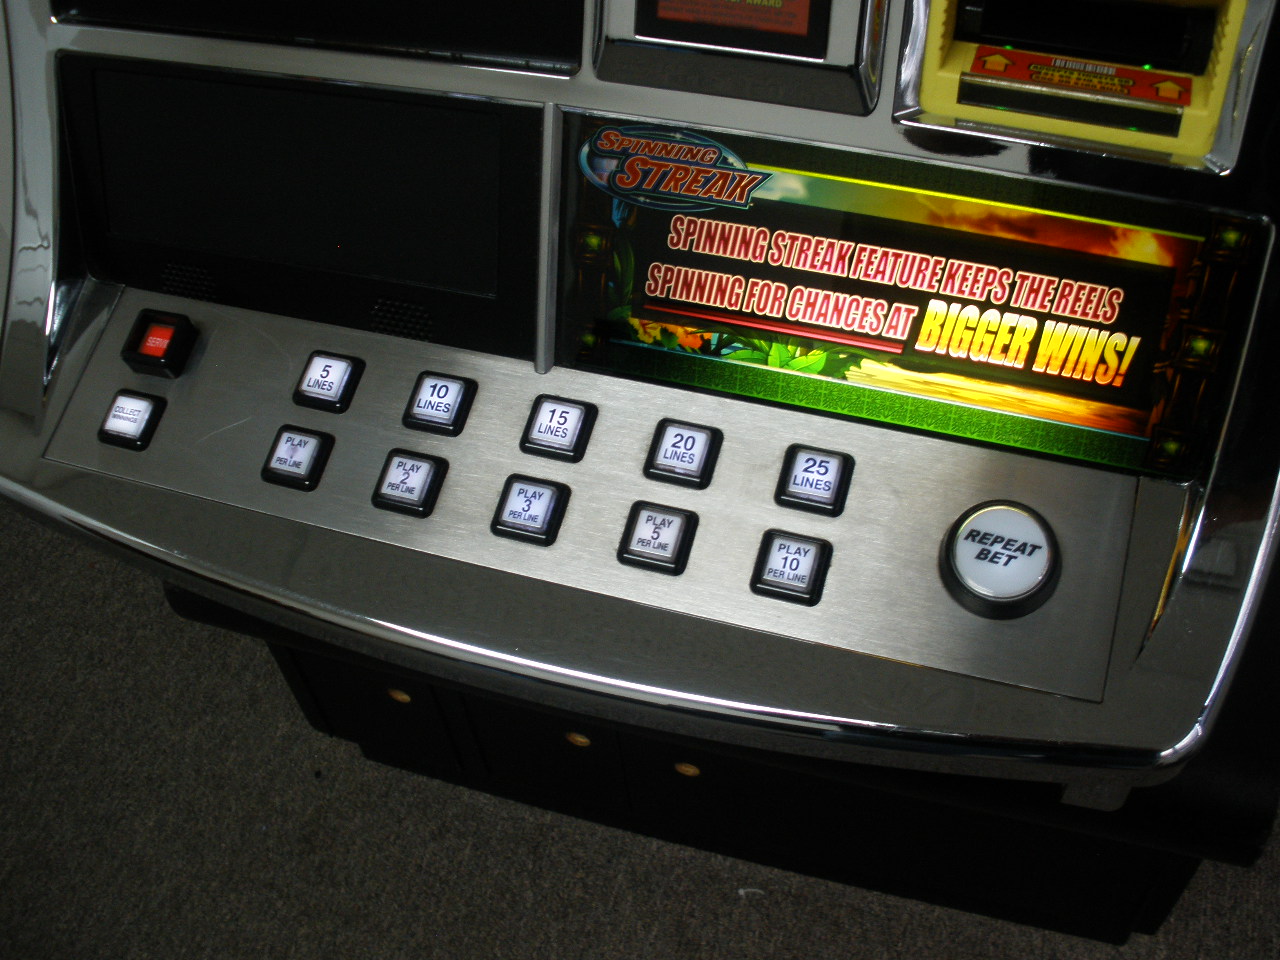 wms winning bid slot machine